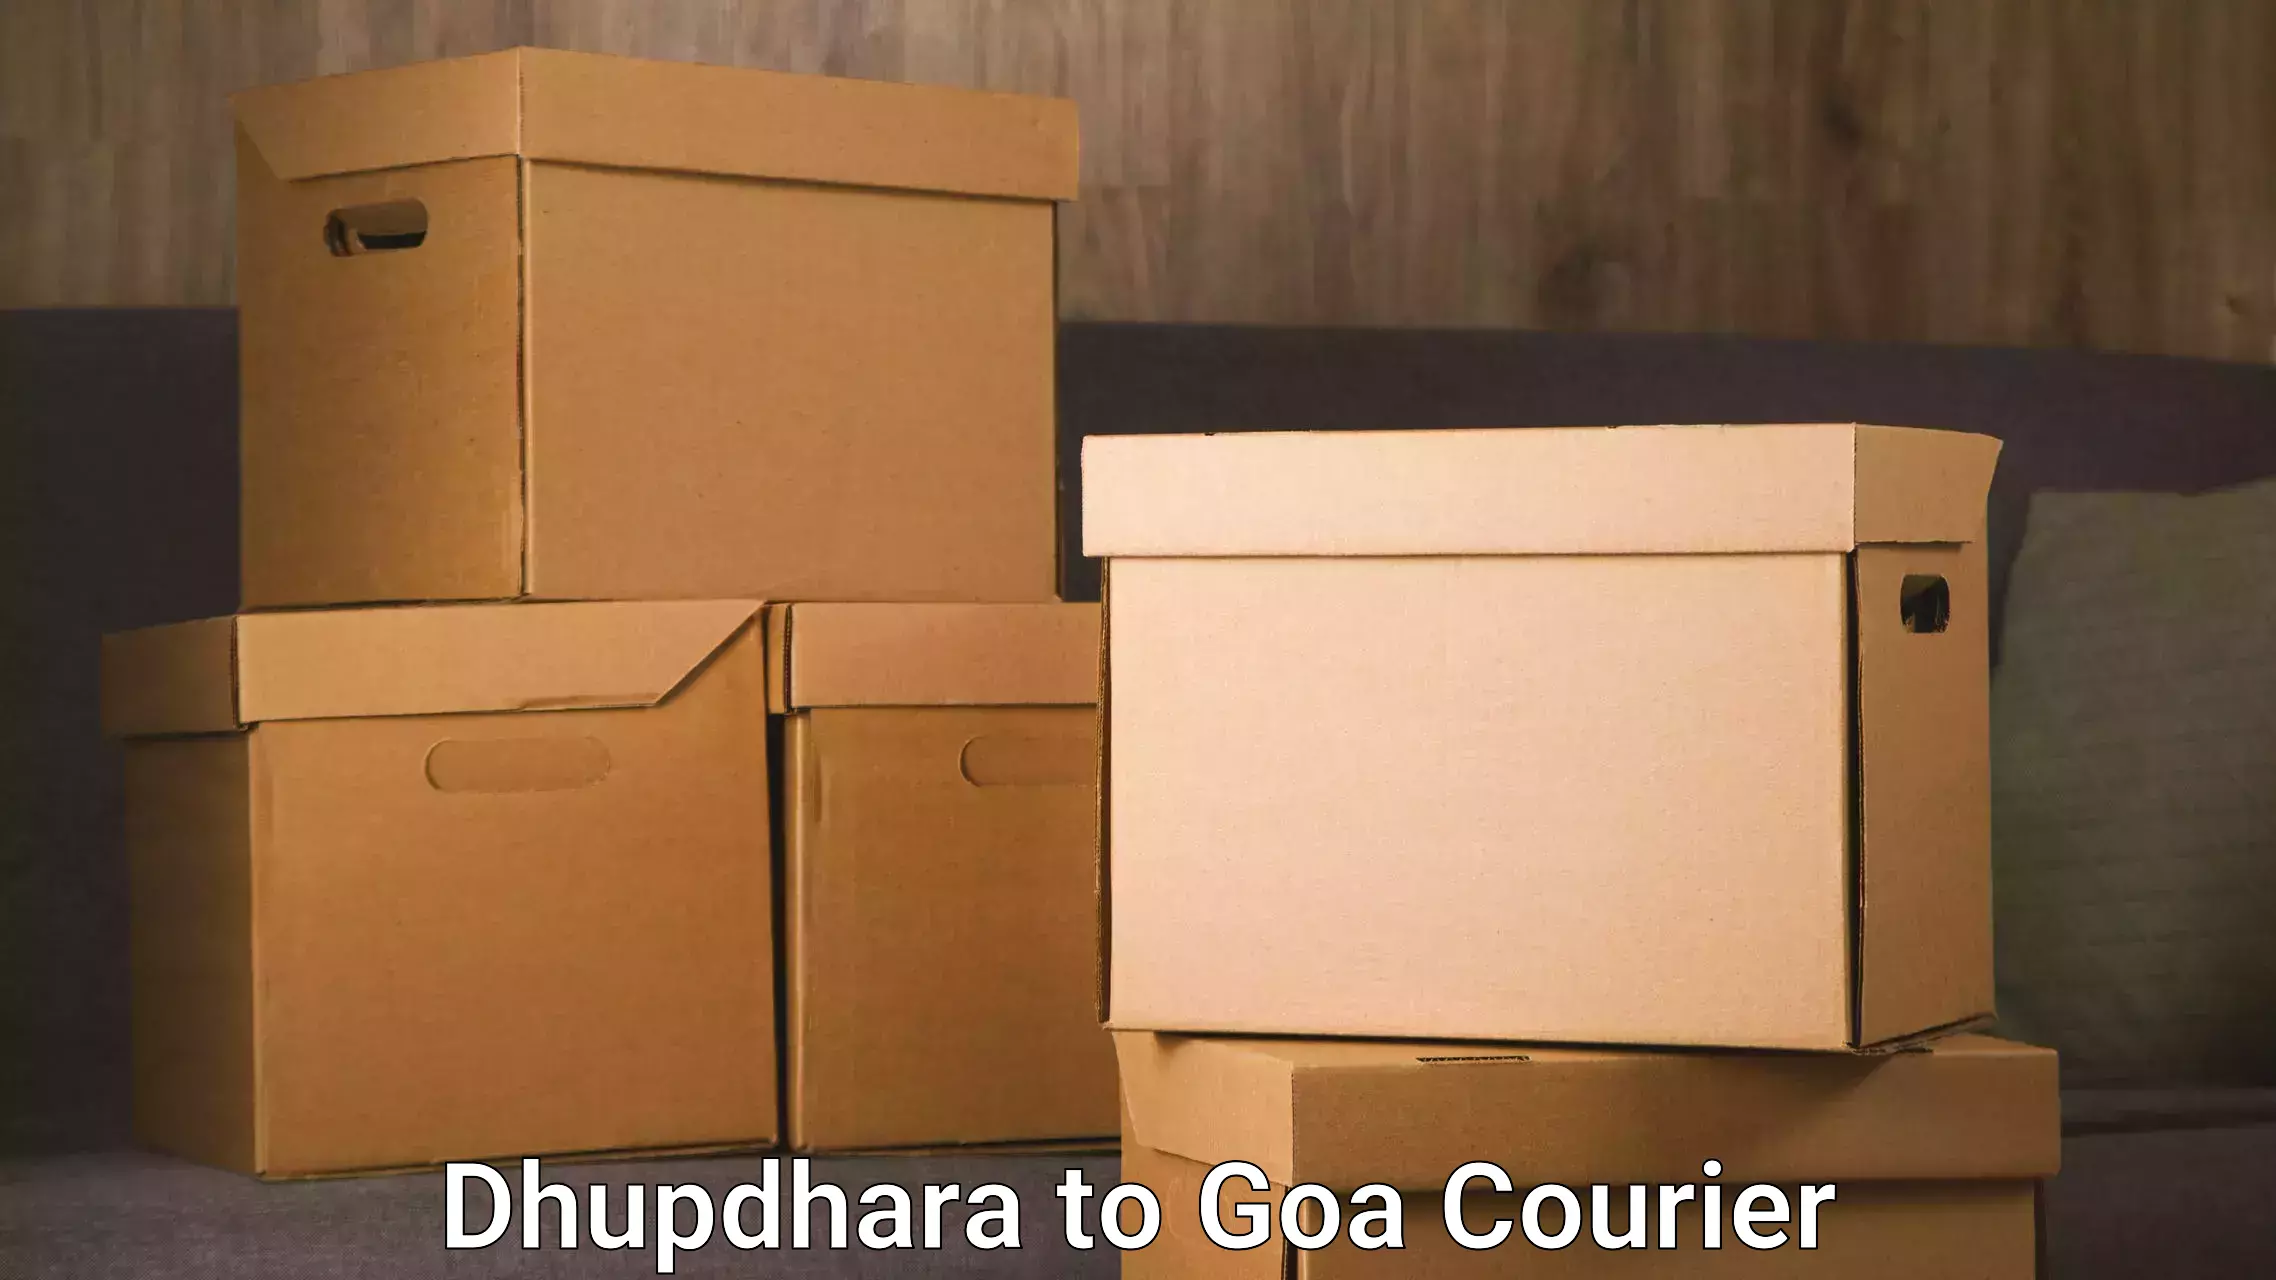 Smart shipping technology Dhupdhara to Goa